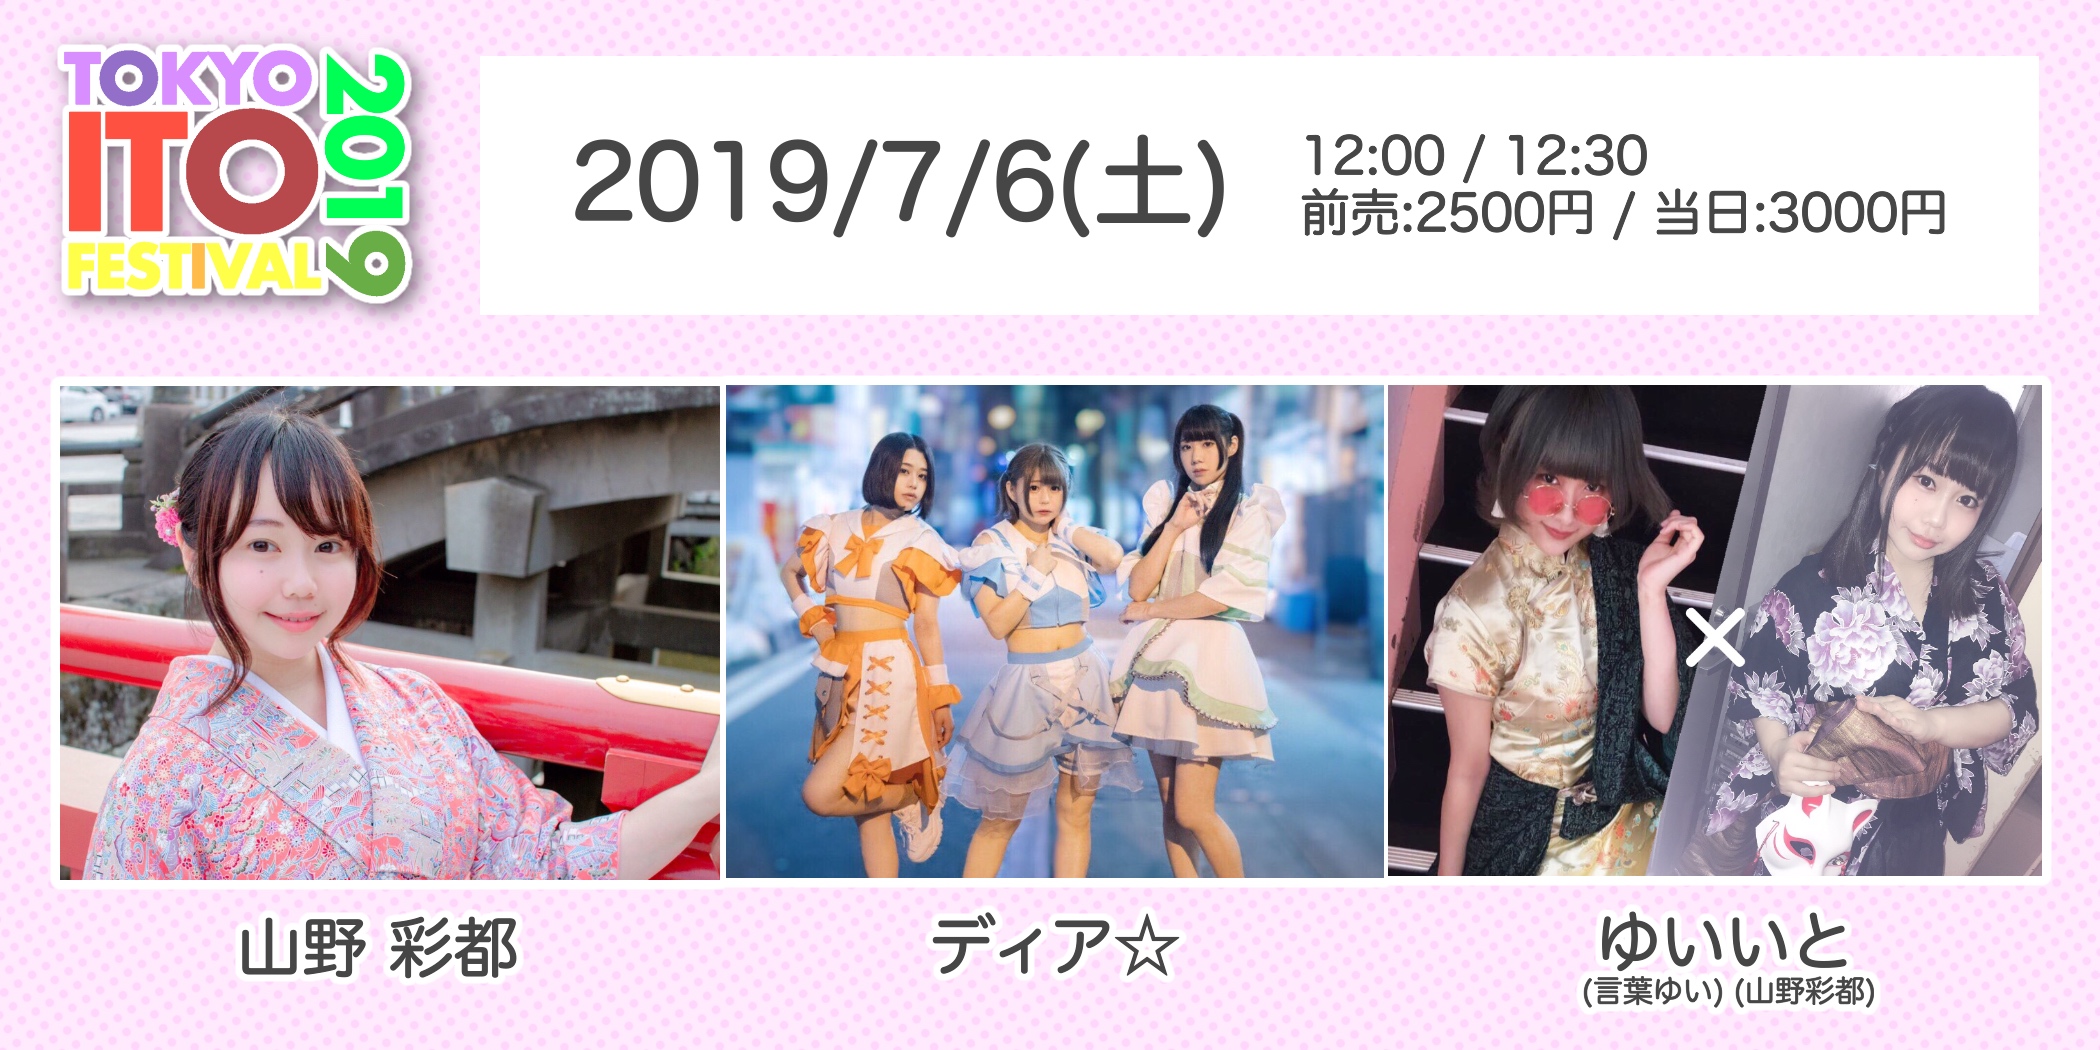 TOKYO ITO FESTIVAL 2019